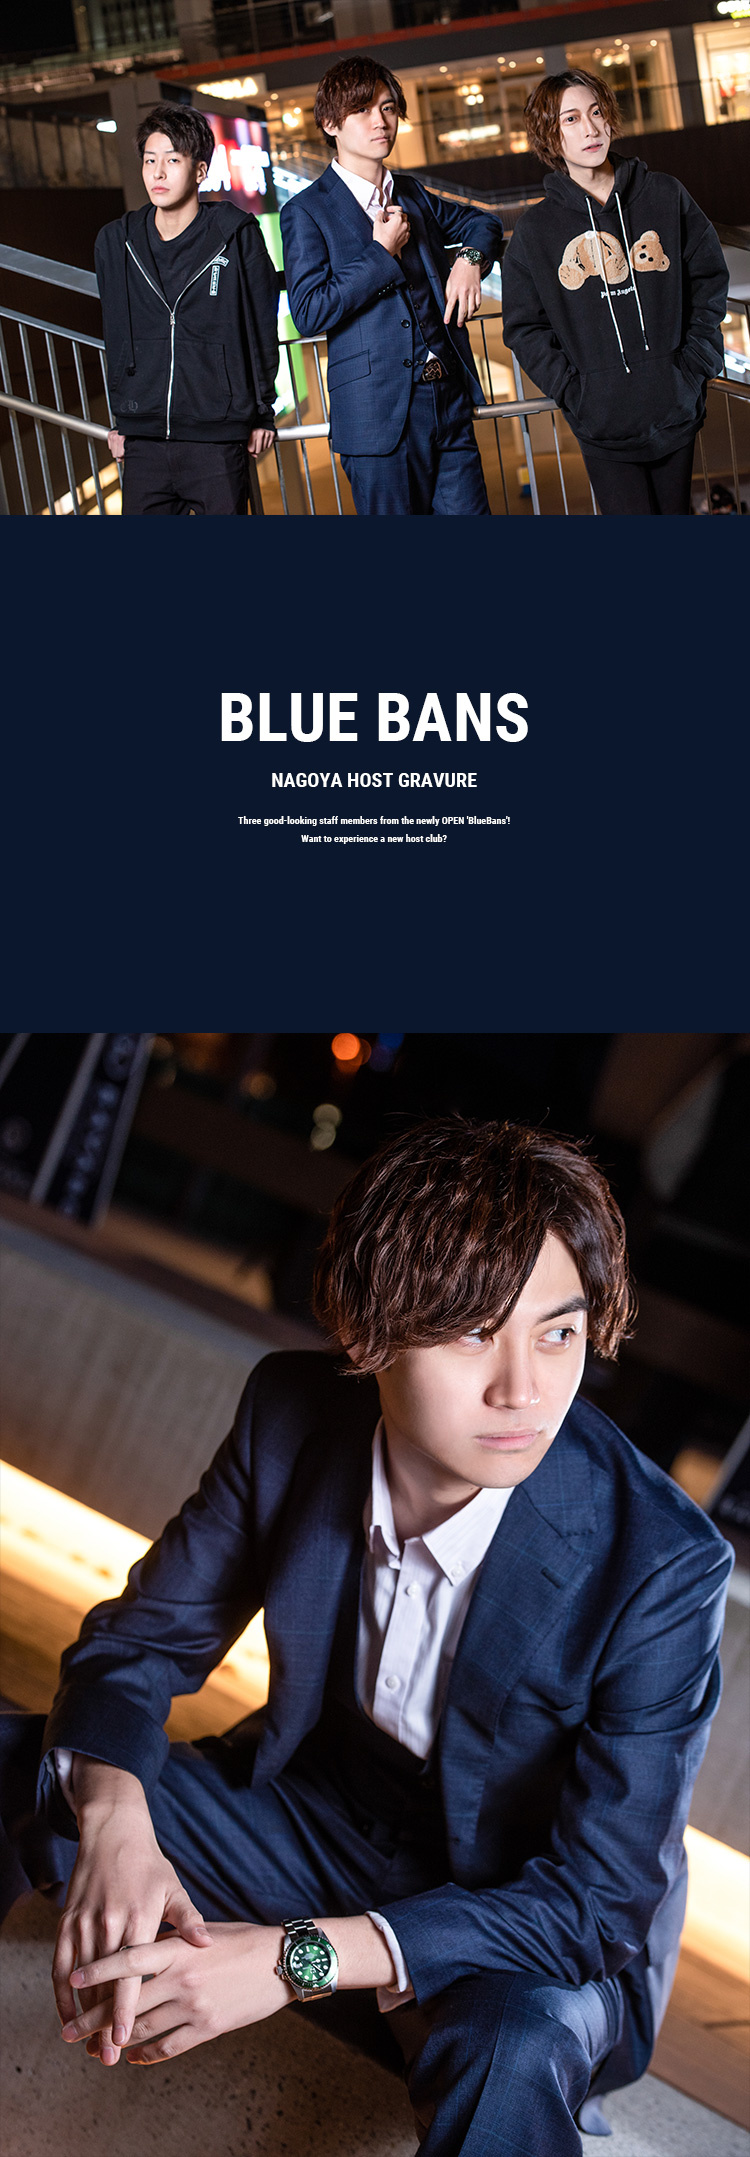 名古屋の新店!!その名は「BLUE BANS」